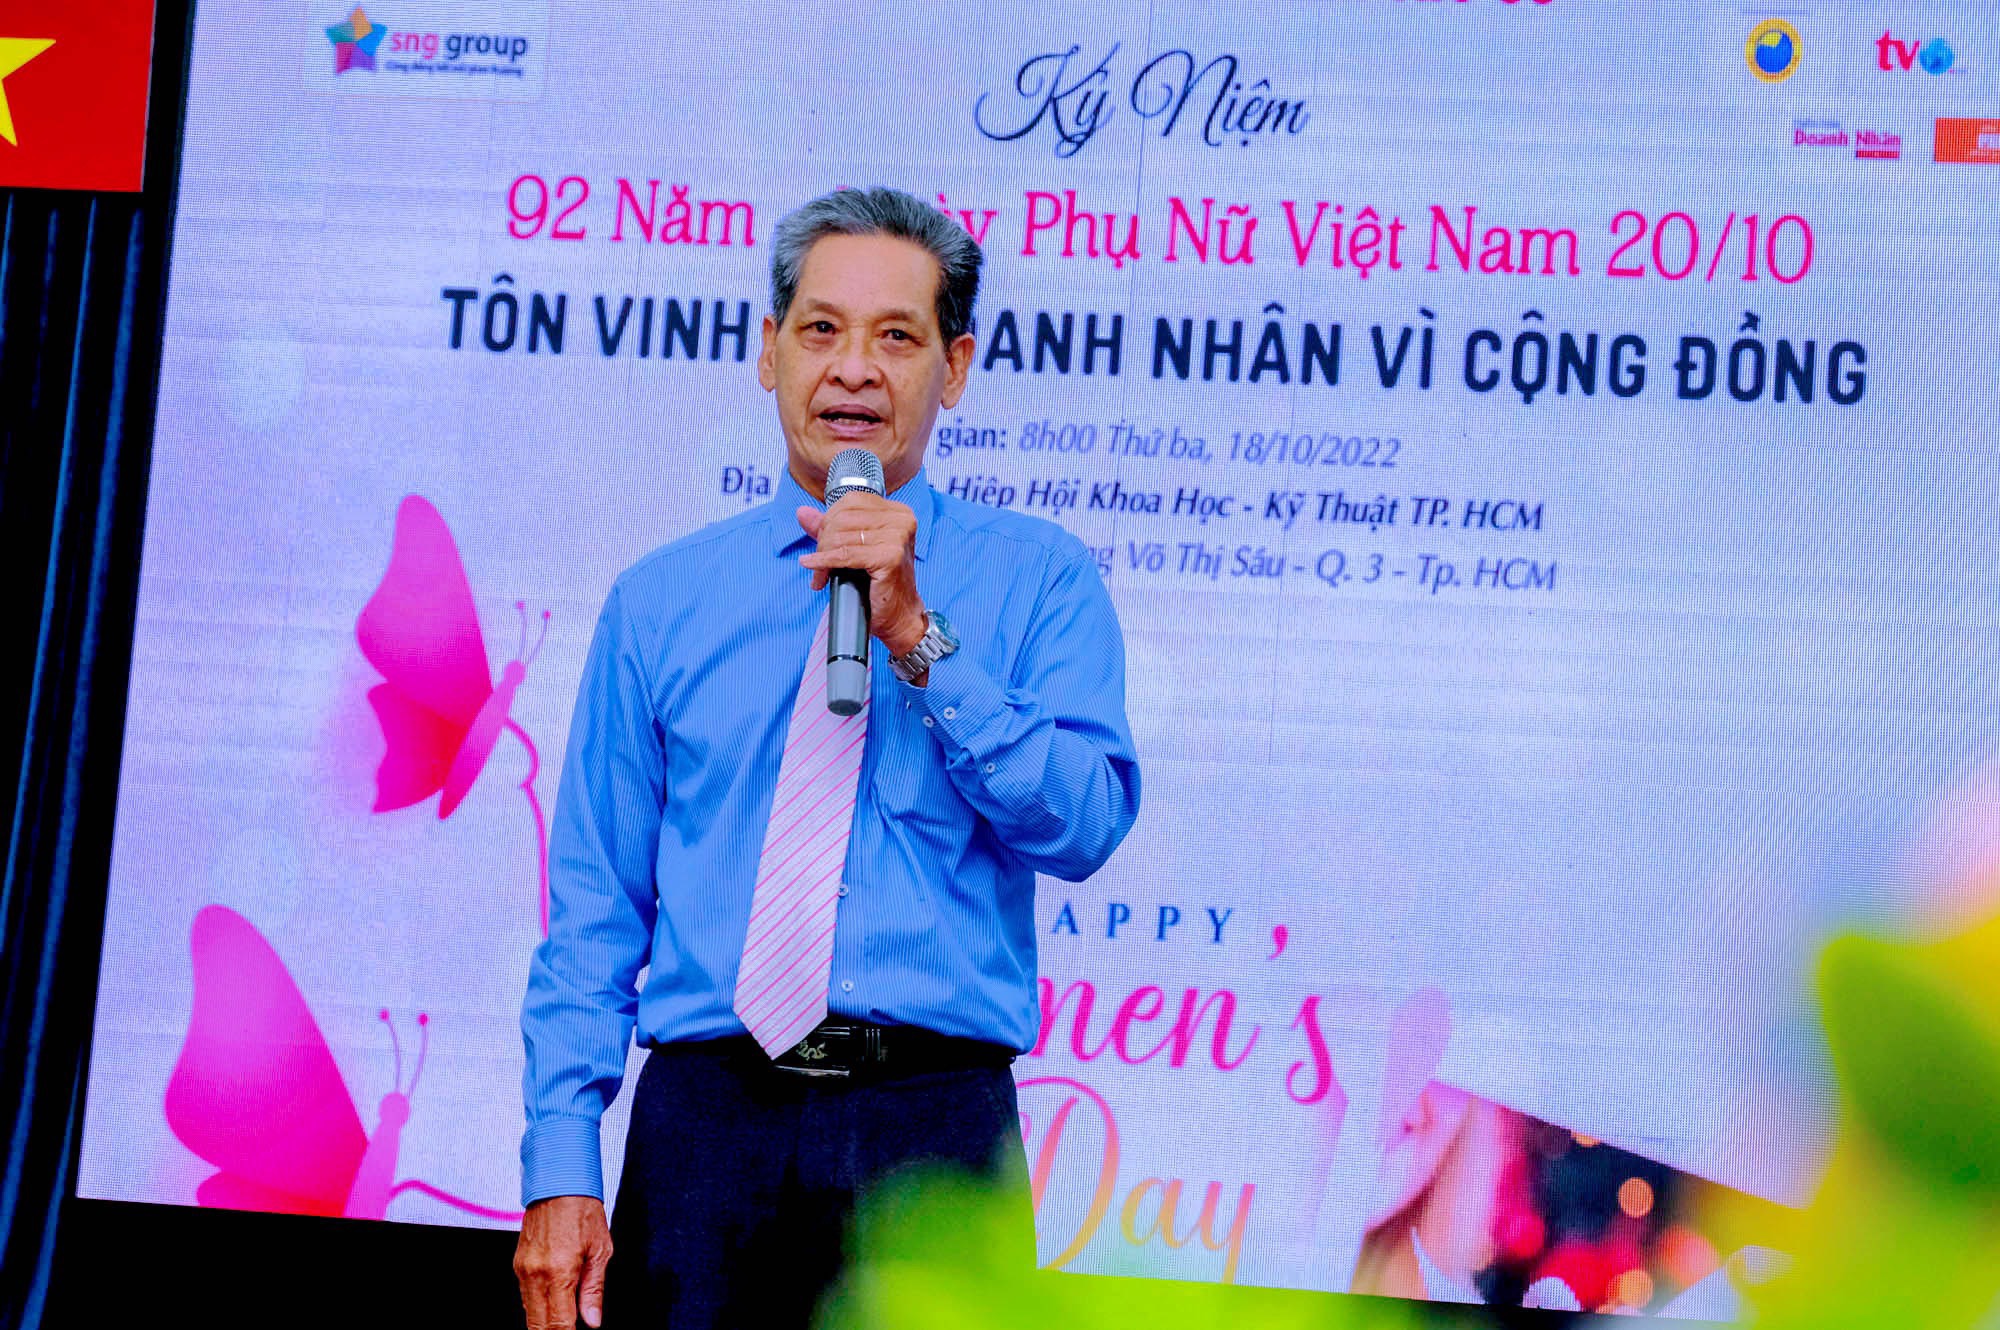 SNG GROUP - Tôn Vinh Nữ Doanh Nhân Vì Cộng Đồng nhân dịp Phụ Nữ Việt Nam 20/10